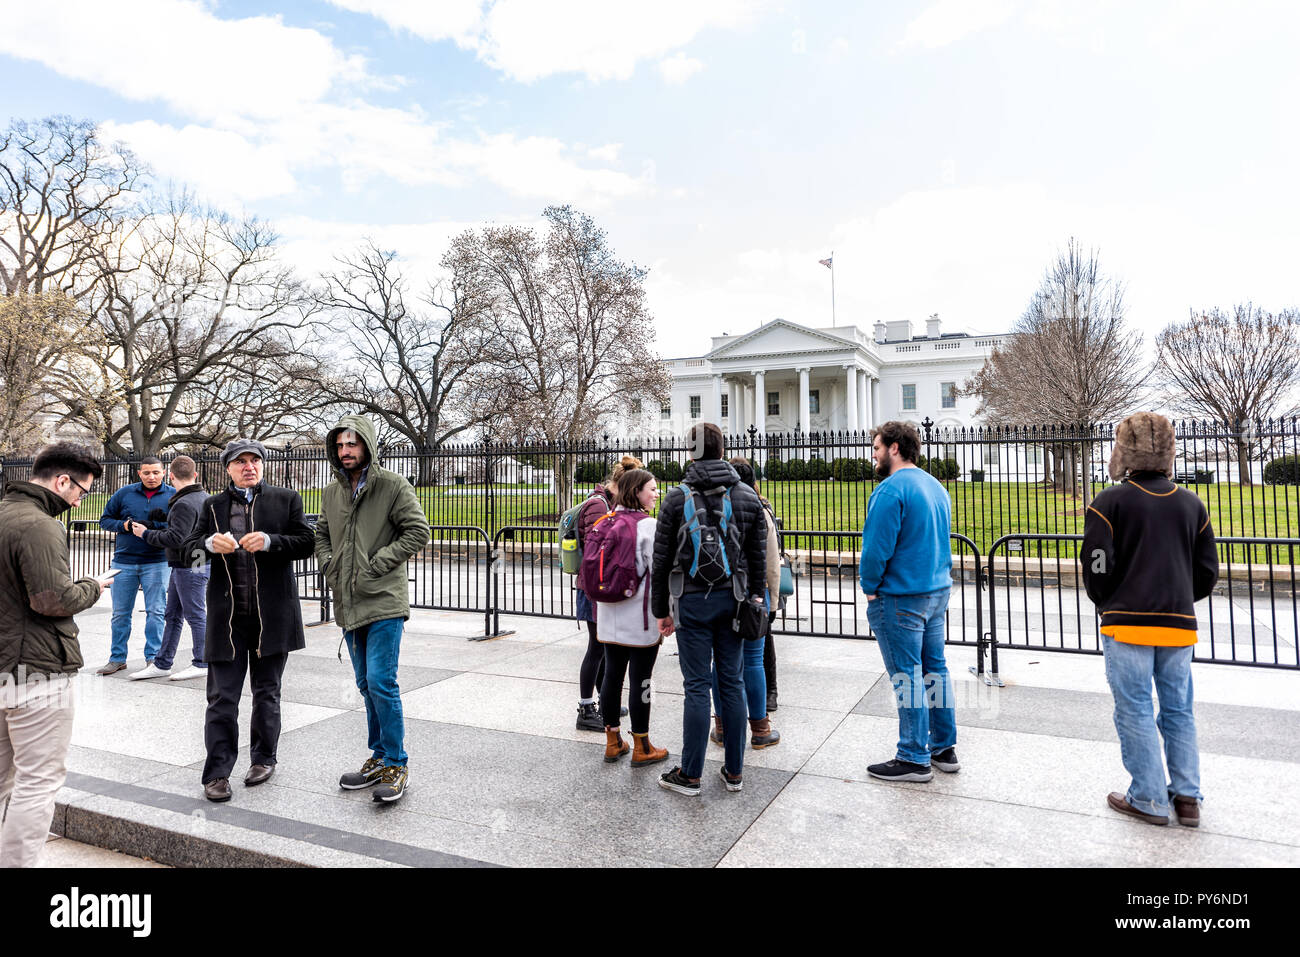 Washington DC, USA - 9. März 2018: die Masse von vielen Menschen im White House Präsident Gebäude in der Hauptstadt der Vereinigten Staaten im kalten Winter, Stand o Stockfoto